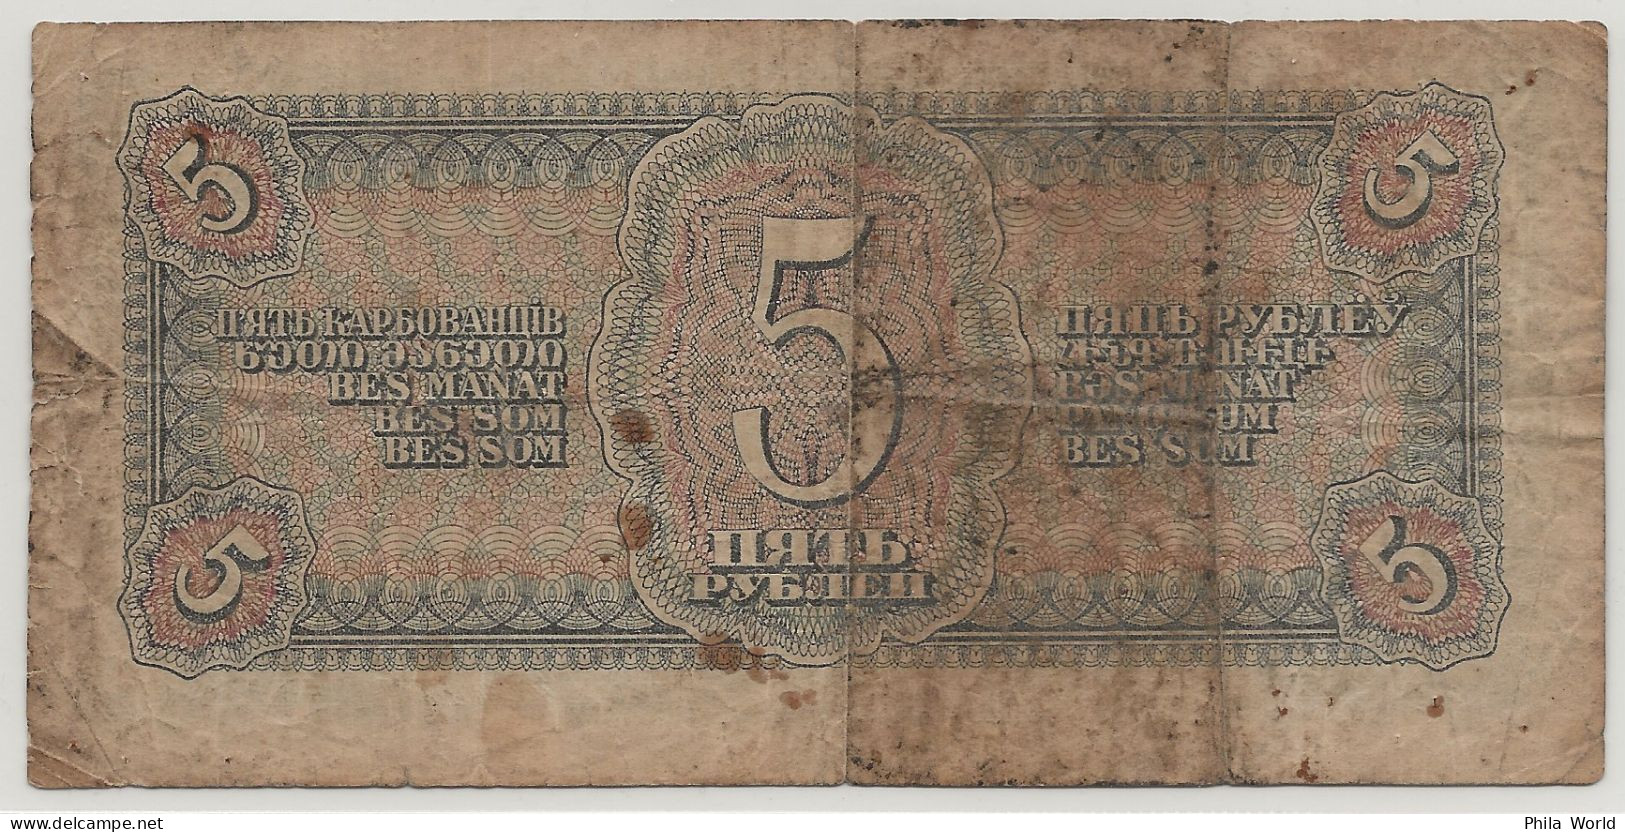 URSS CCCP Russie 1938 Billet Banque 5 Roubles Pilote Avion - Russia